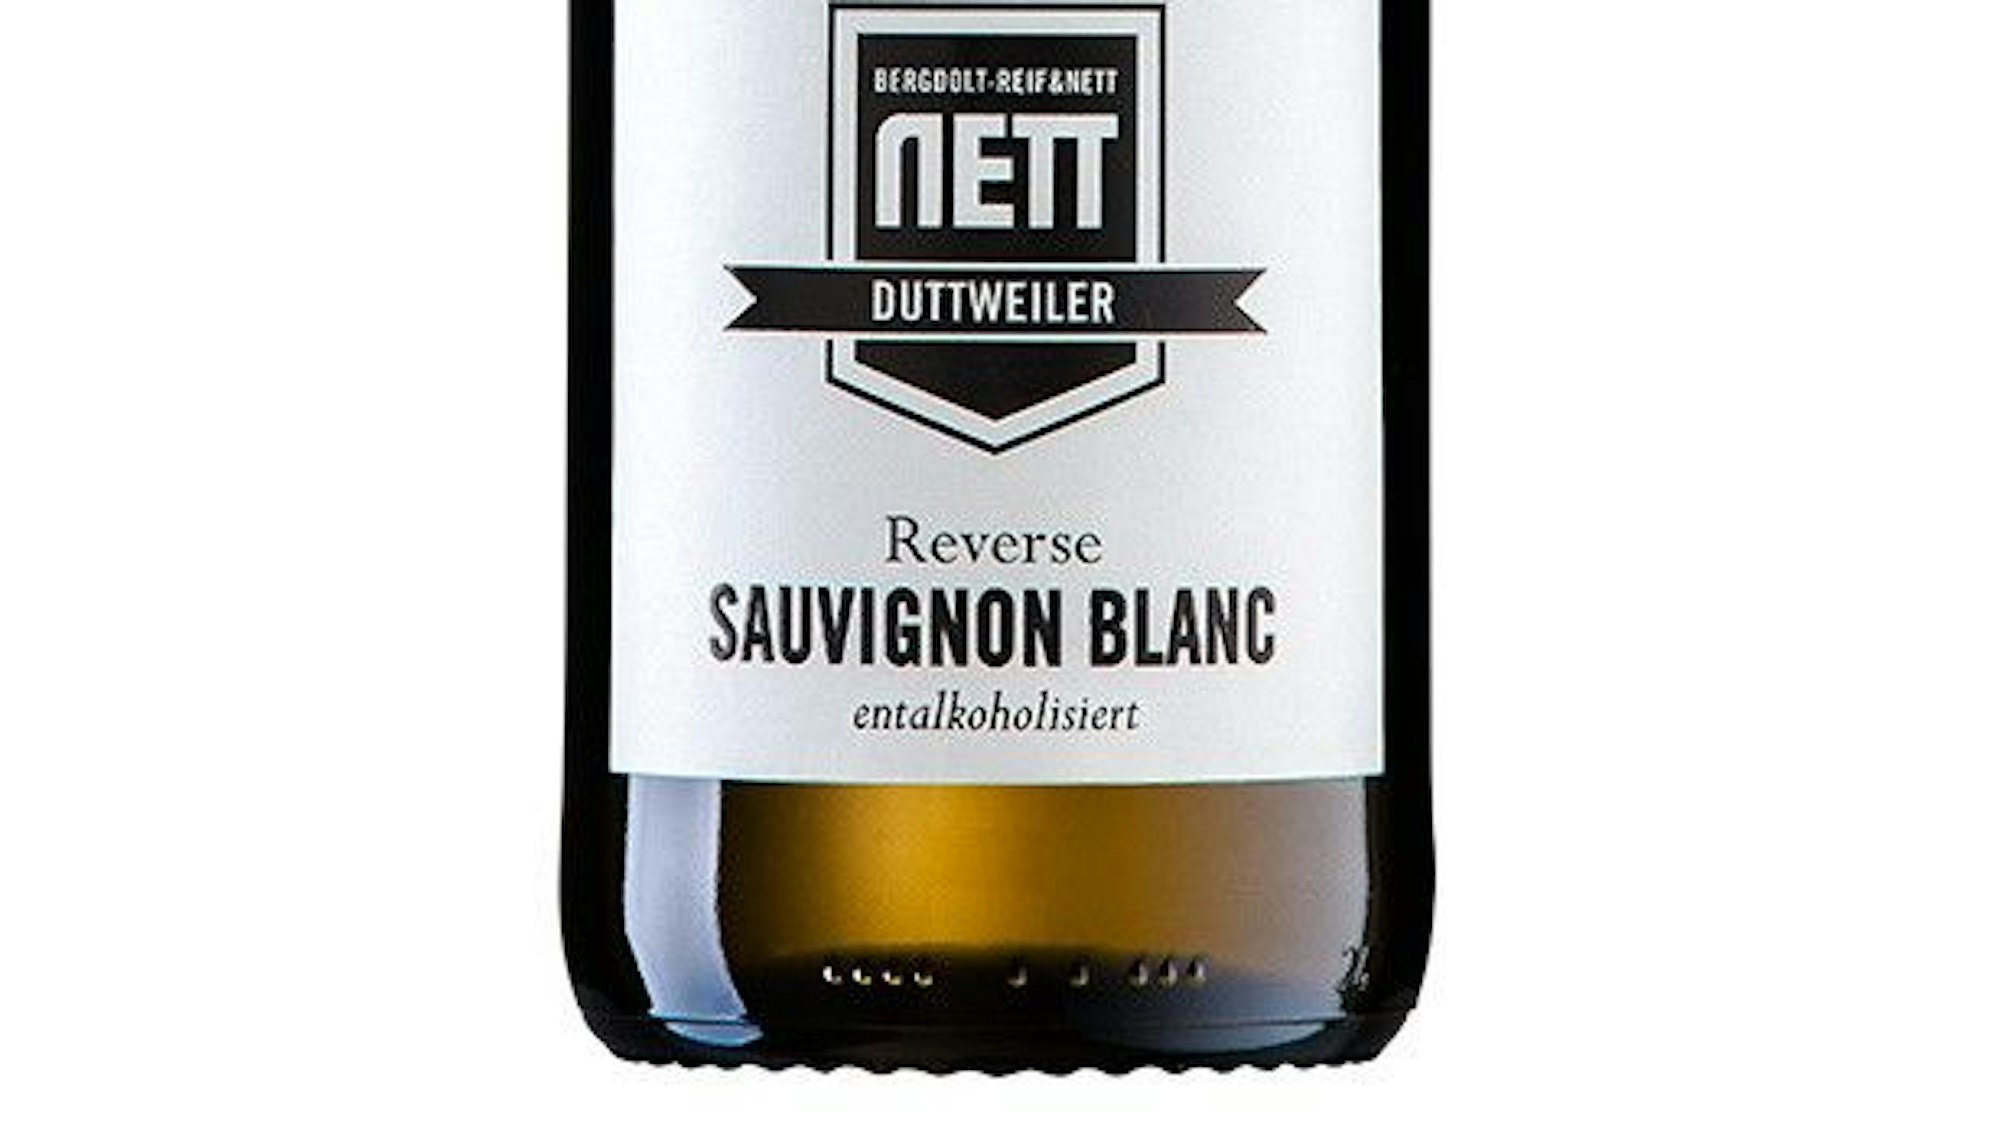 Etikett der Weinfalsche Sauvignon Blanc Reverse, Weingut Berdolt-Reif & Nett